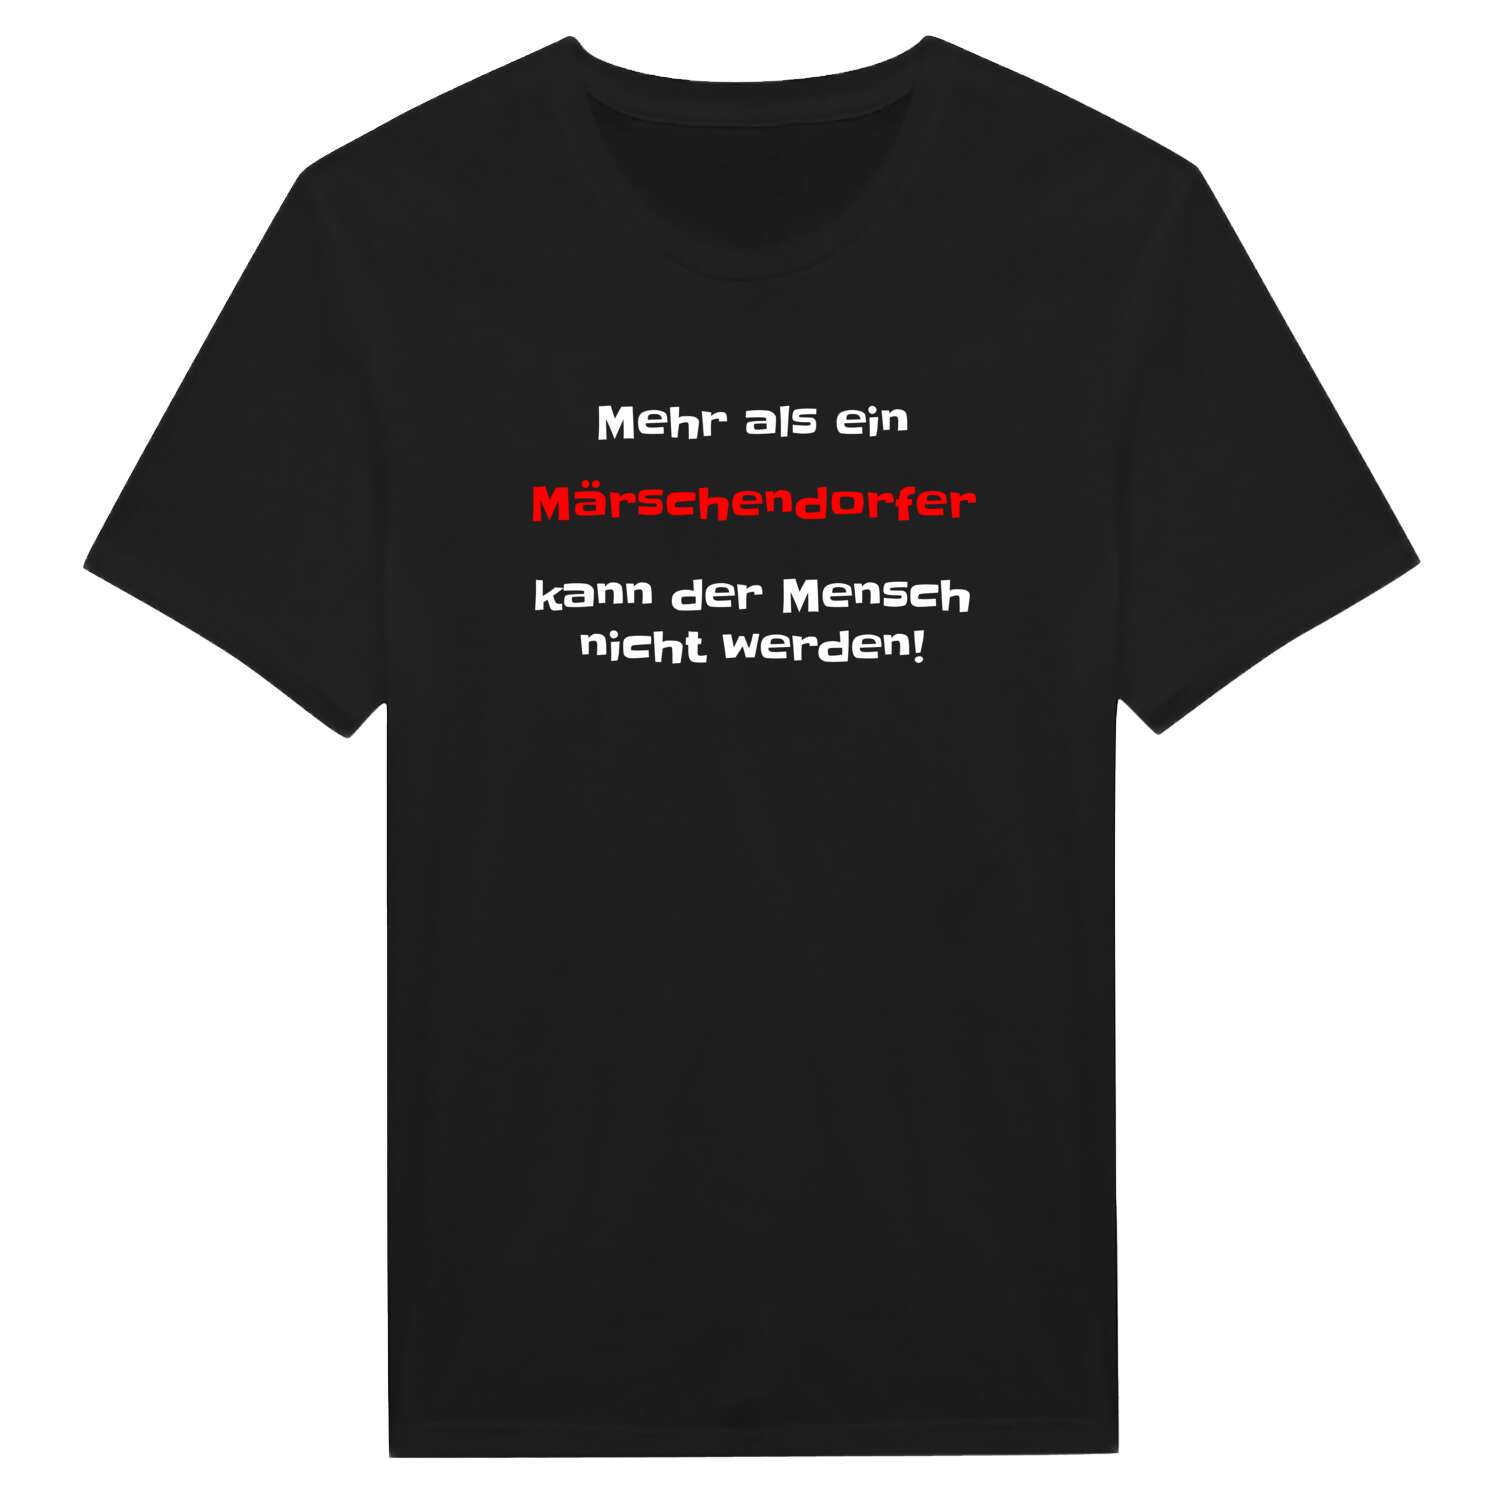 Märschendorf T-Shirt »Mehr als ein«